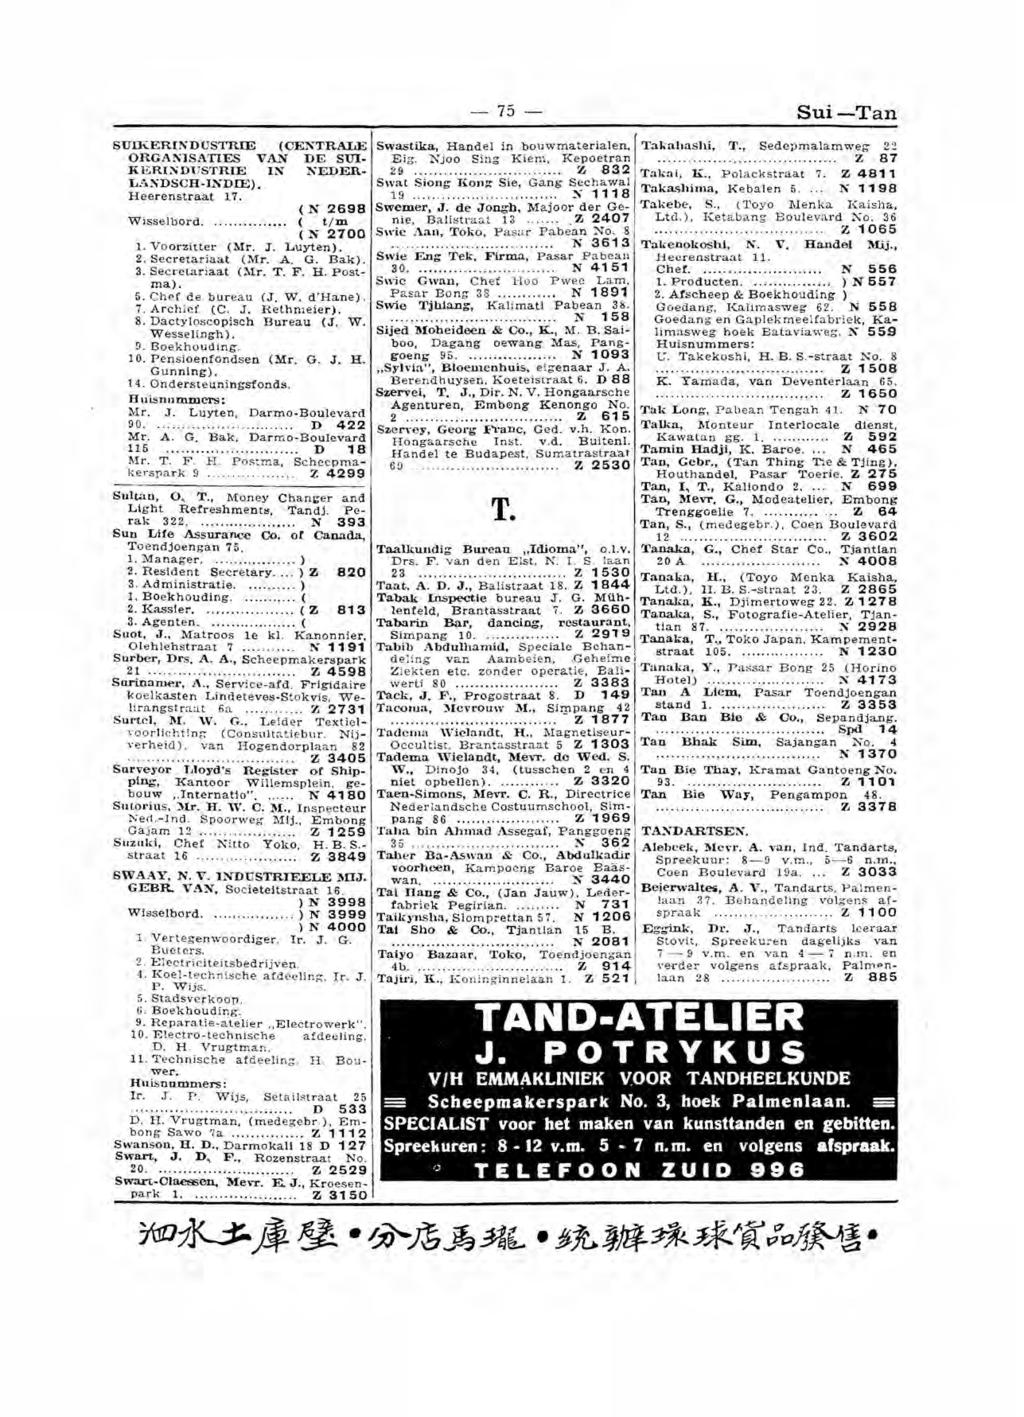 de tn Telefoongids Soerabaja (1937) bron: Indische Genealogische Vereniging (http://www.igv.nl) beschikbaar gesteld door L.M.